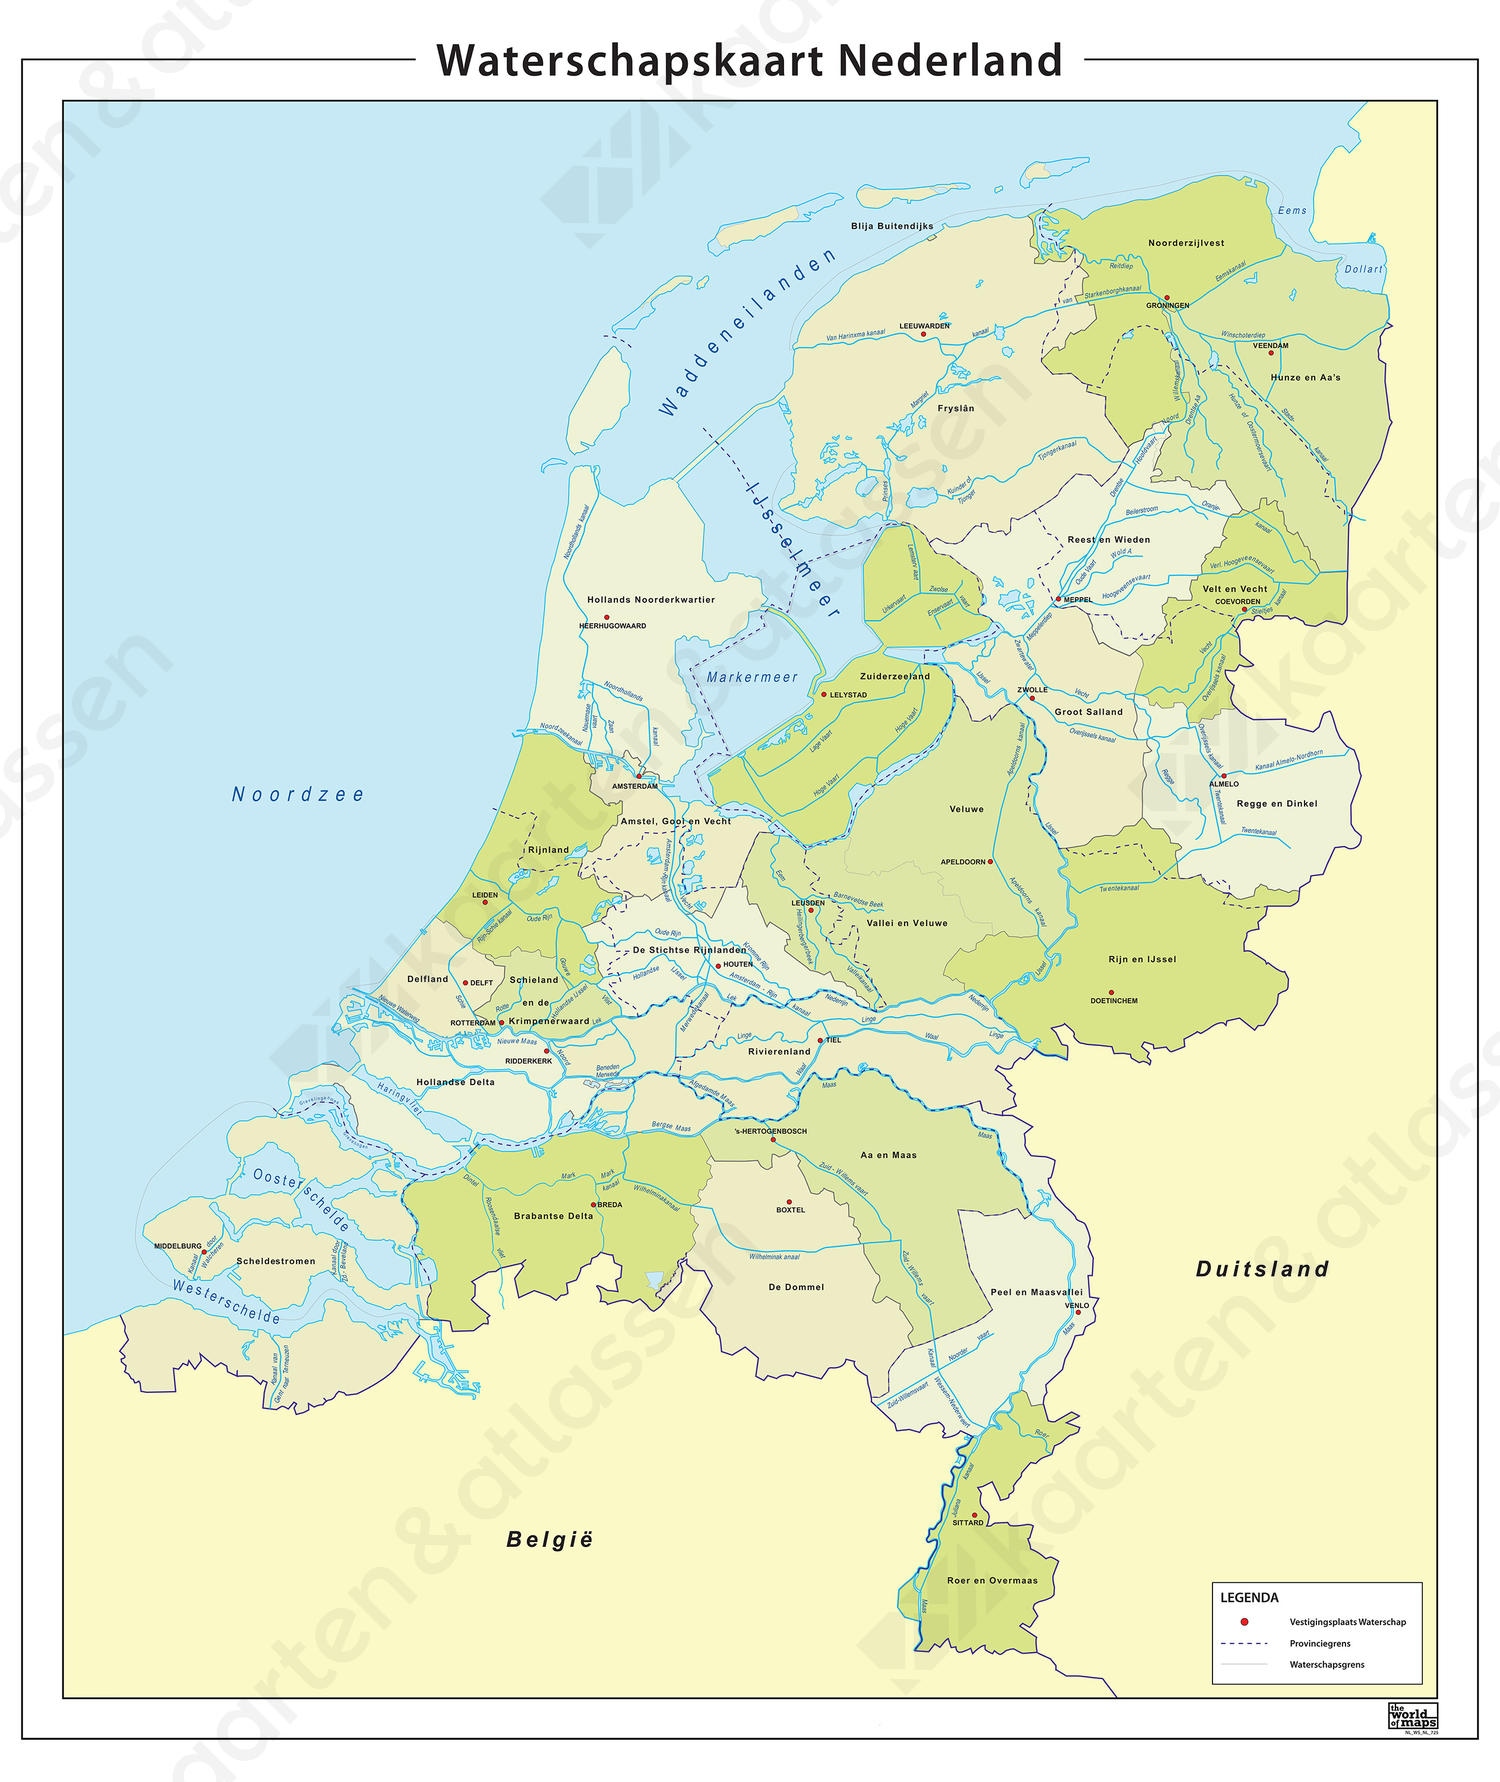 Waterschapskaart van Nederland